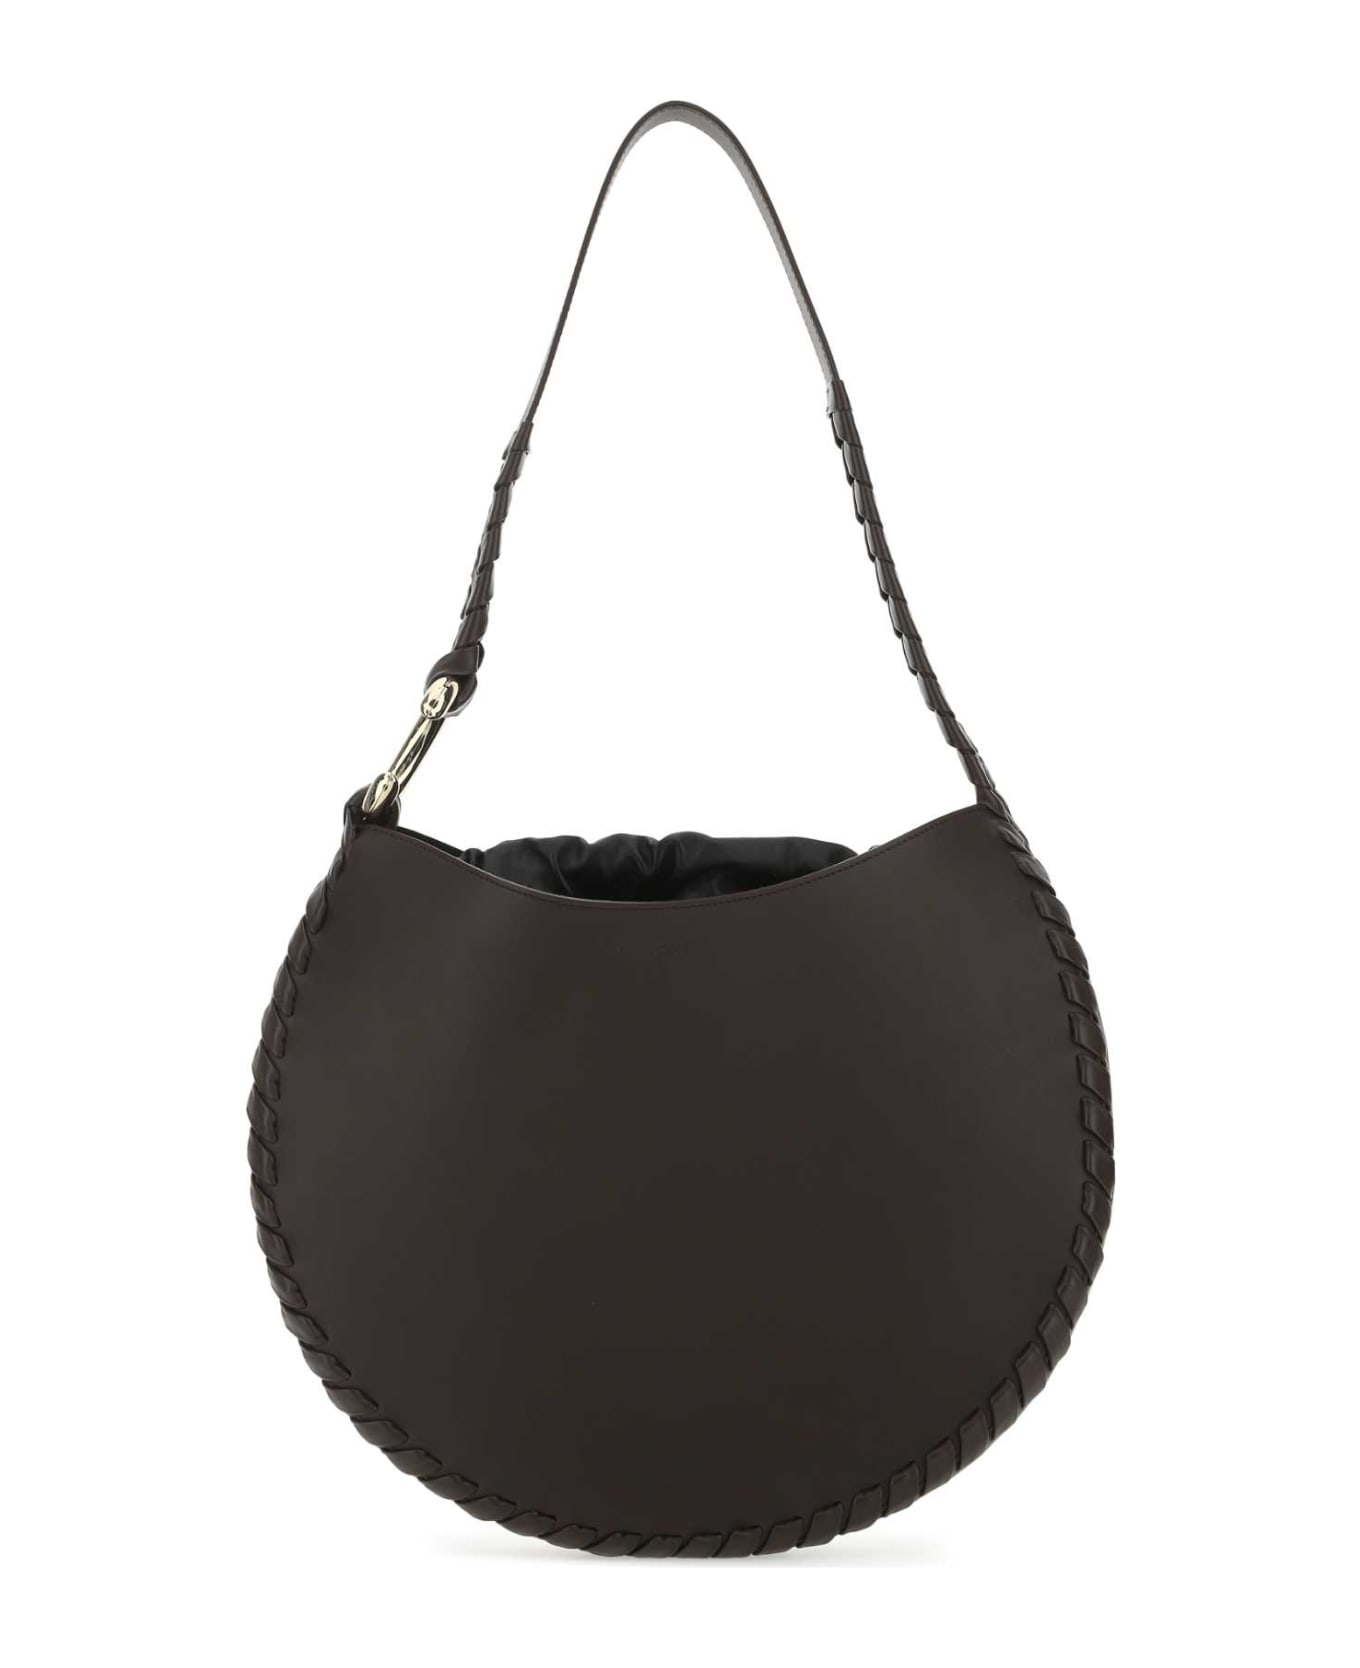 Chloé Dark Brown Leather Large Mate Shoulder Bag - 297